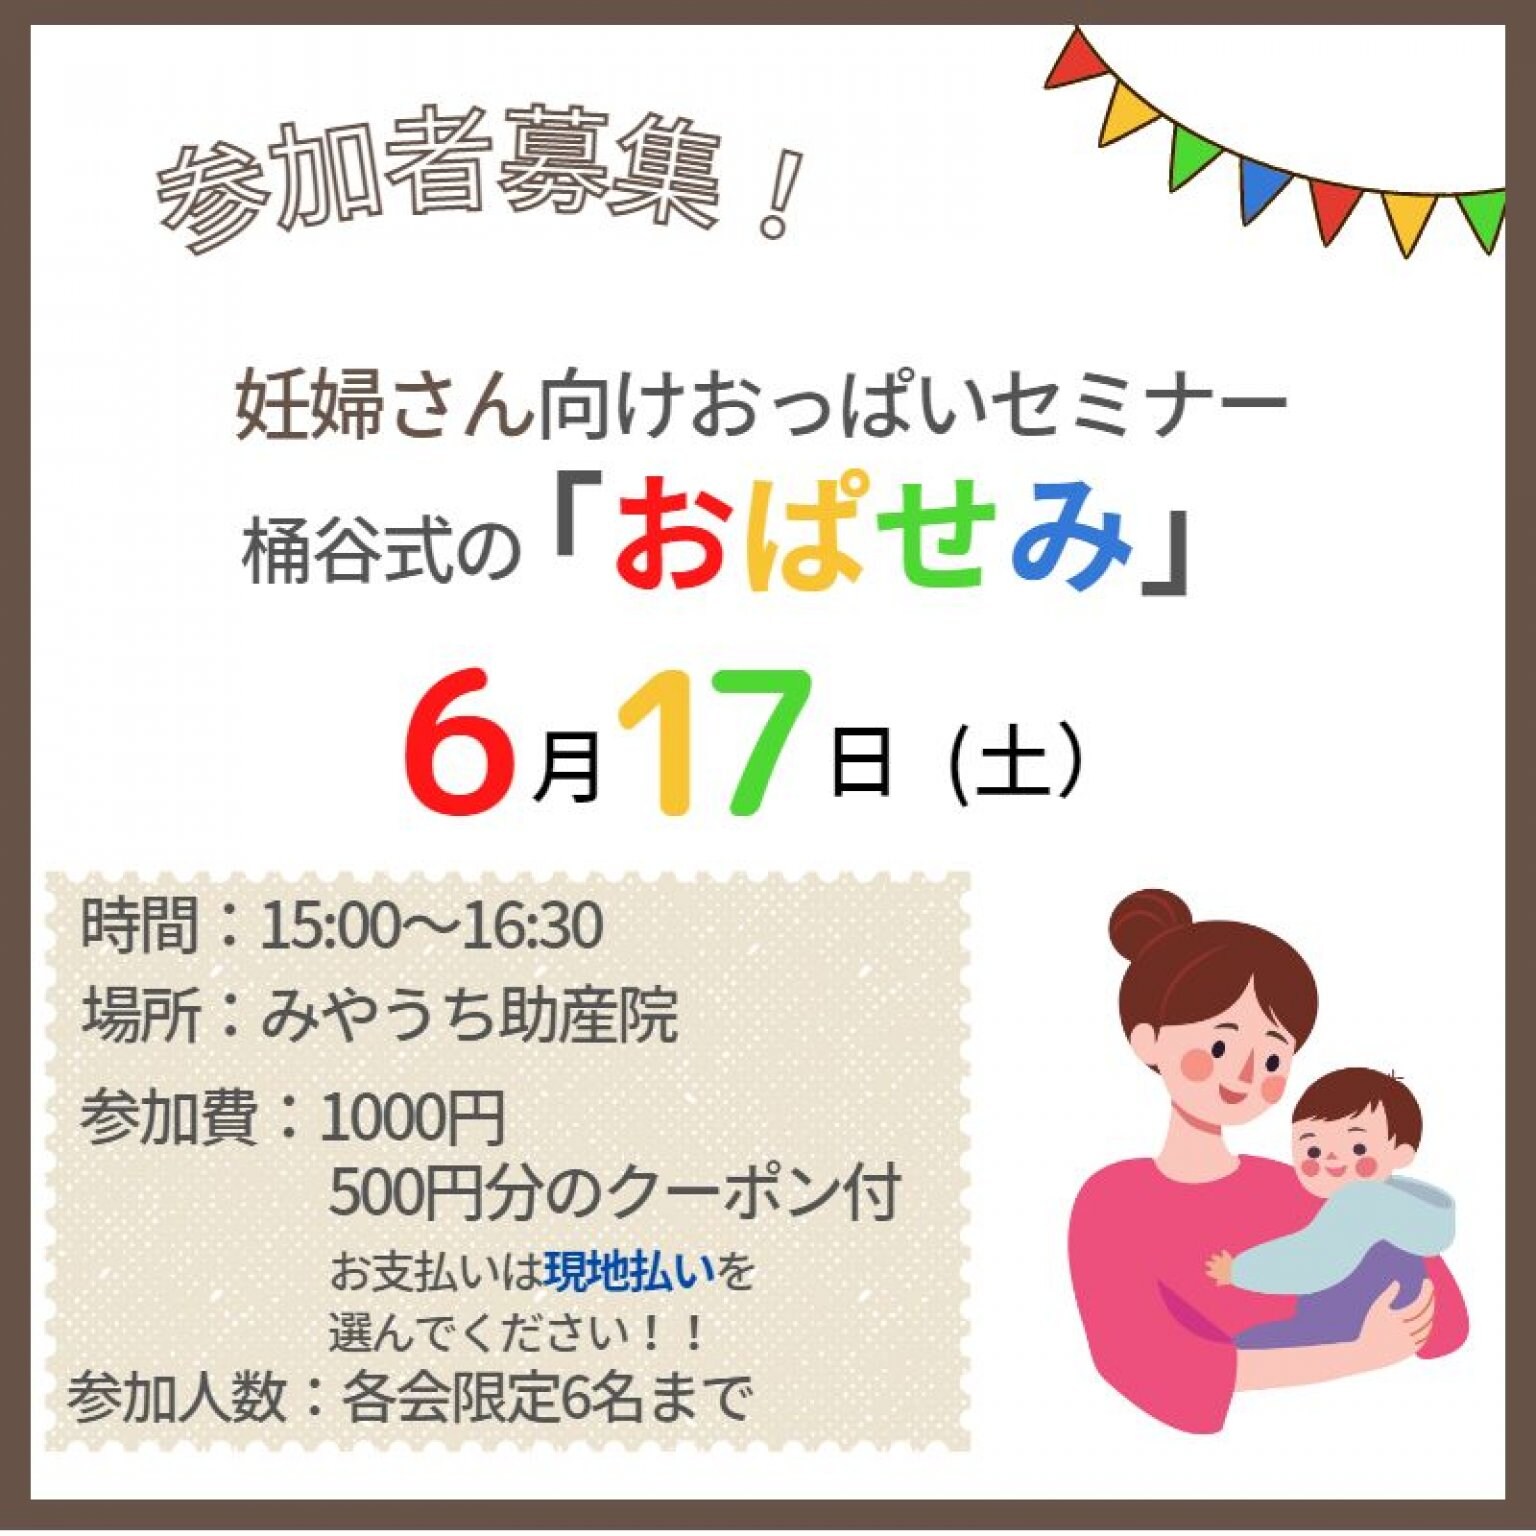 【現地払い専用】6月17日(土)妊婦さん向けおっぱいセミナー「おぱせみ」